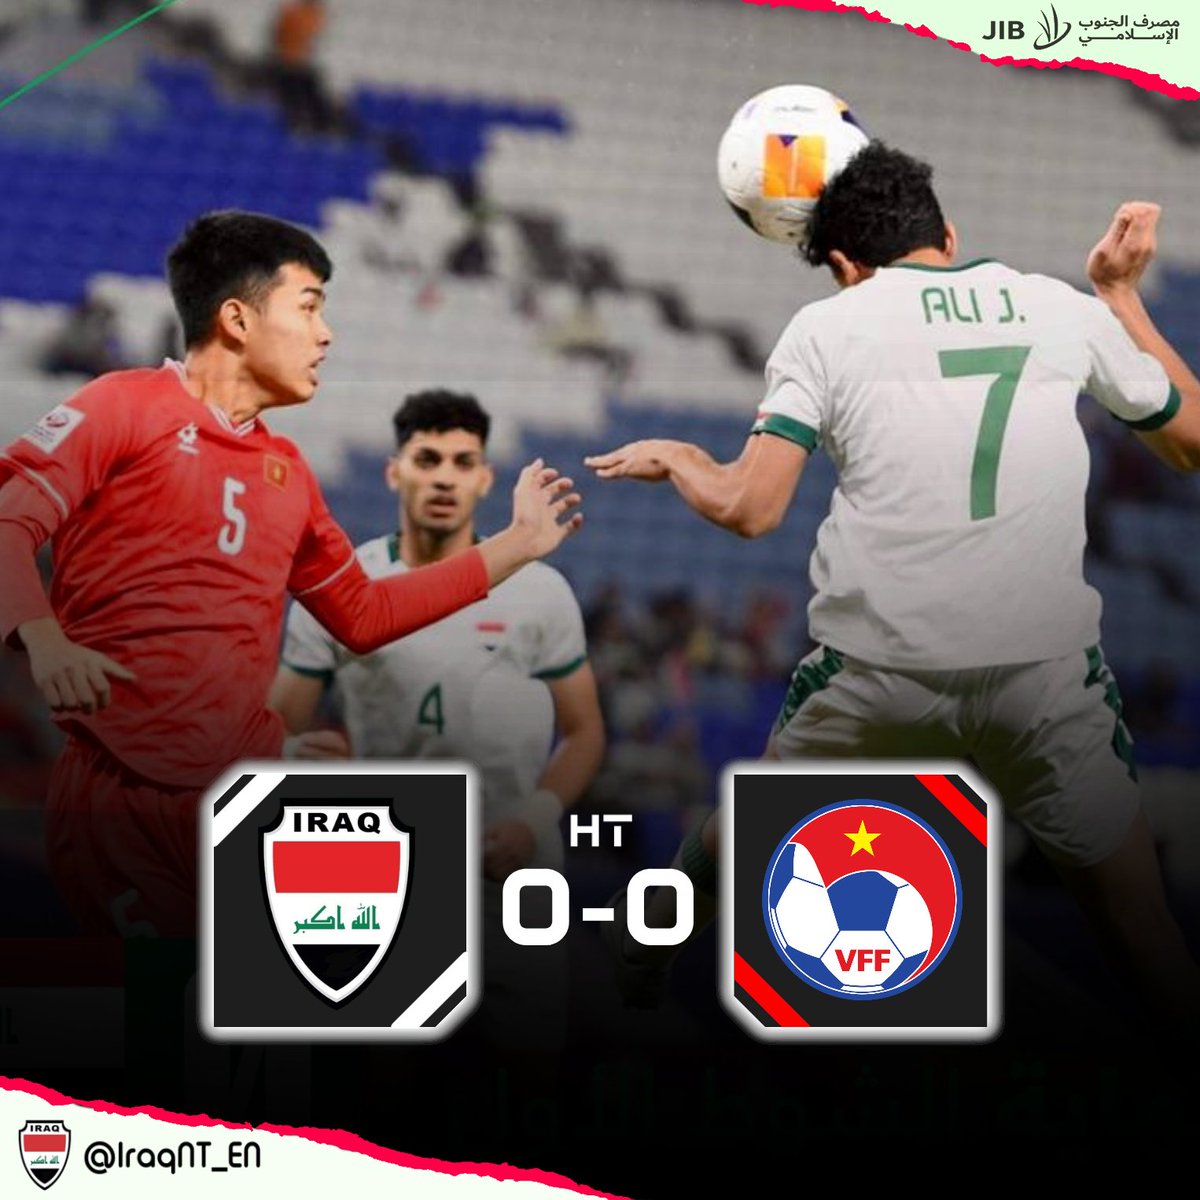 HT: 🇮🇶 #Iraq U23 0-0 Vietnam U23 🇻🇳 Goalless at the half-time break in our #AFCU23 quarter-final. ⚽️ #IRQvVIE #RoadToParis2024